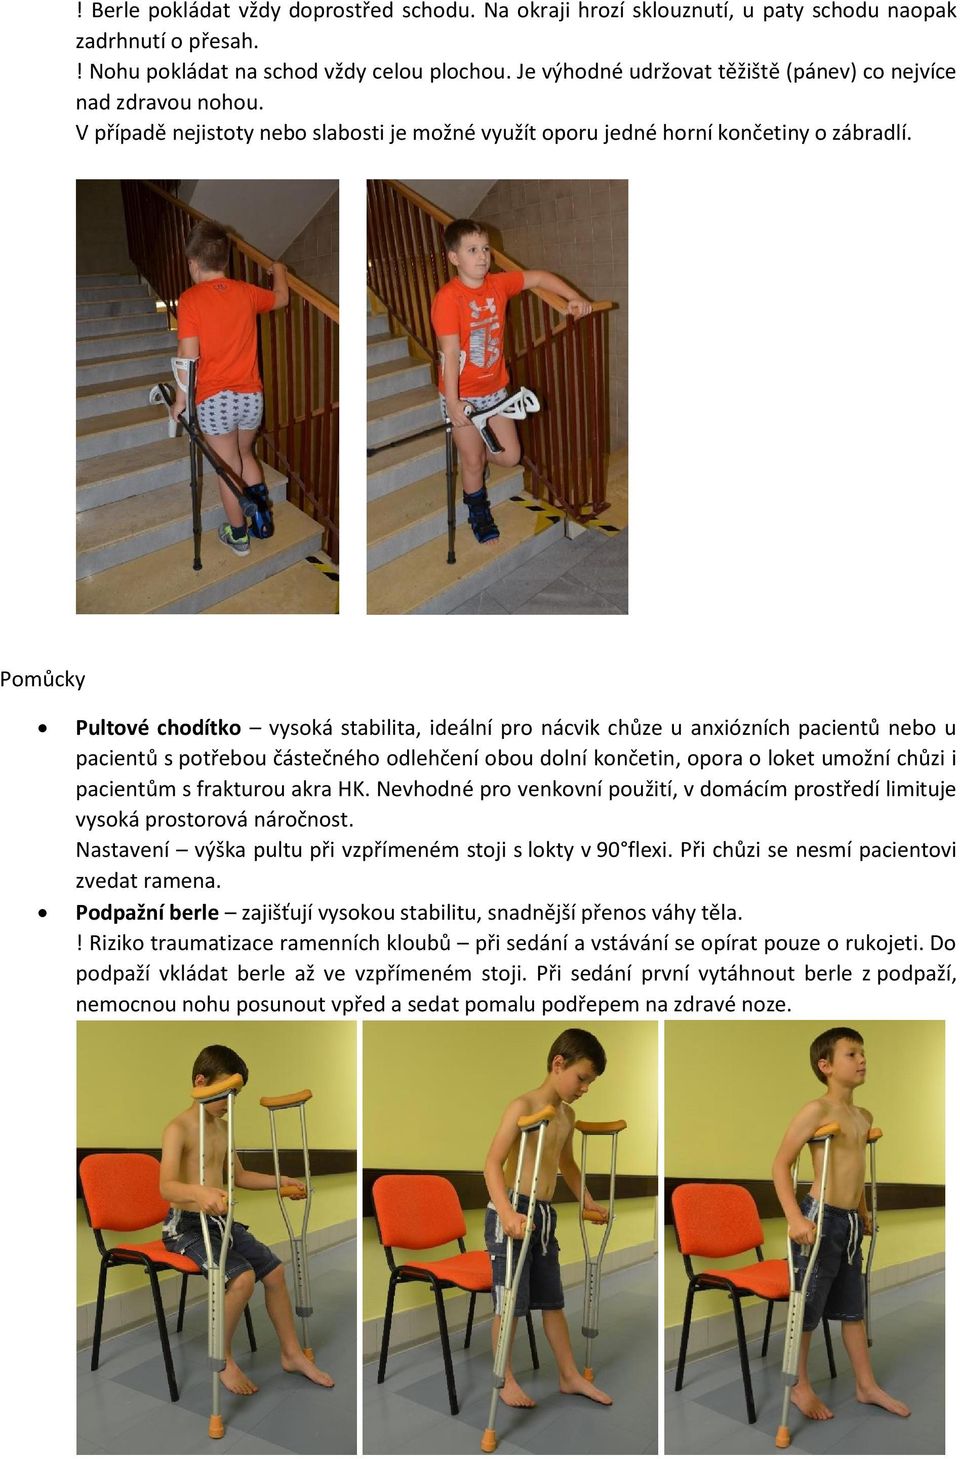 Pomůcky Pultové chodítko vysoká stabilita, ideální pro nácvik chůze u anxiózních pacientů nebo u pacientů s potřebou částečného odlehčení obou dolní končetin, opora o loket umožní chůzi i pacientům s